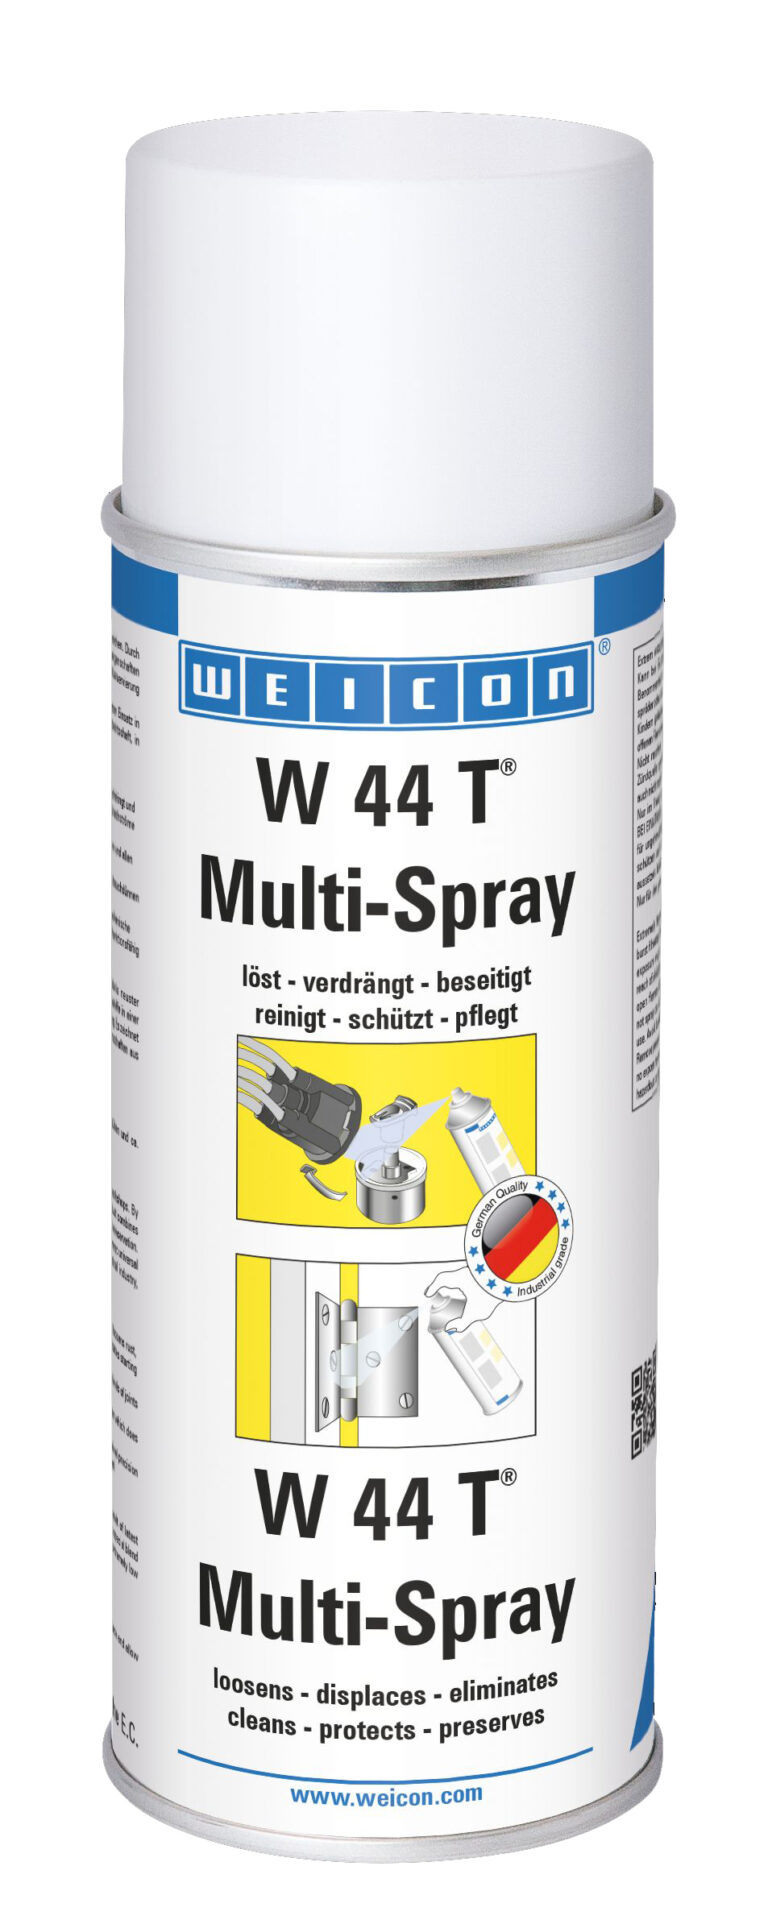 W 44 T Multispray